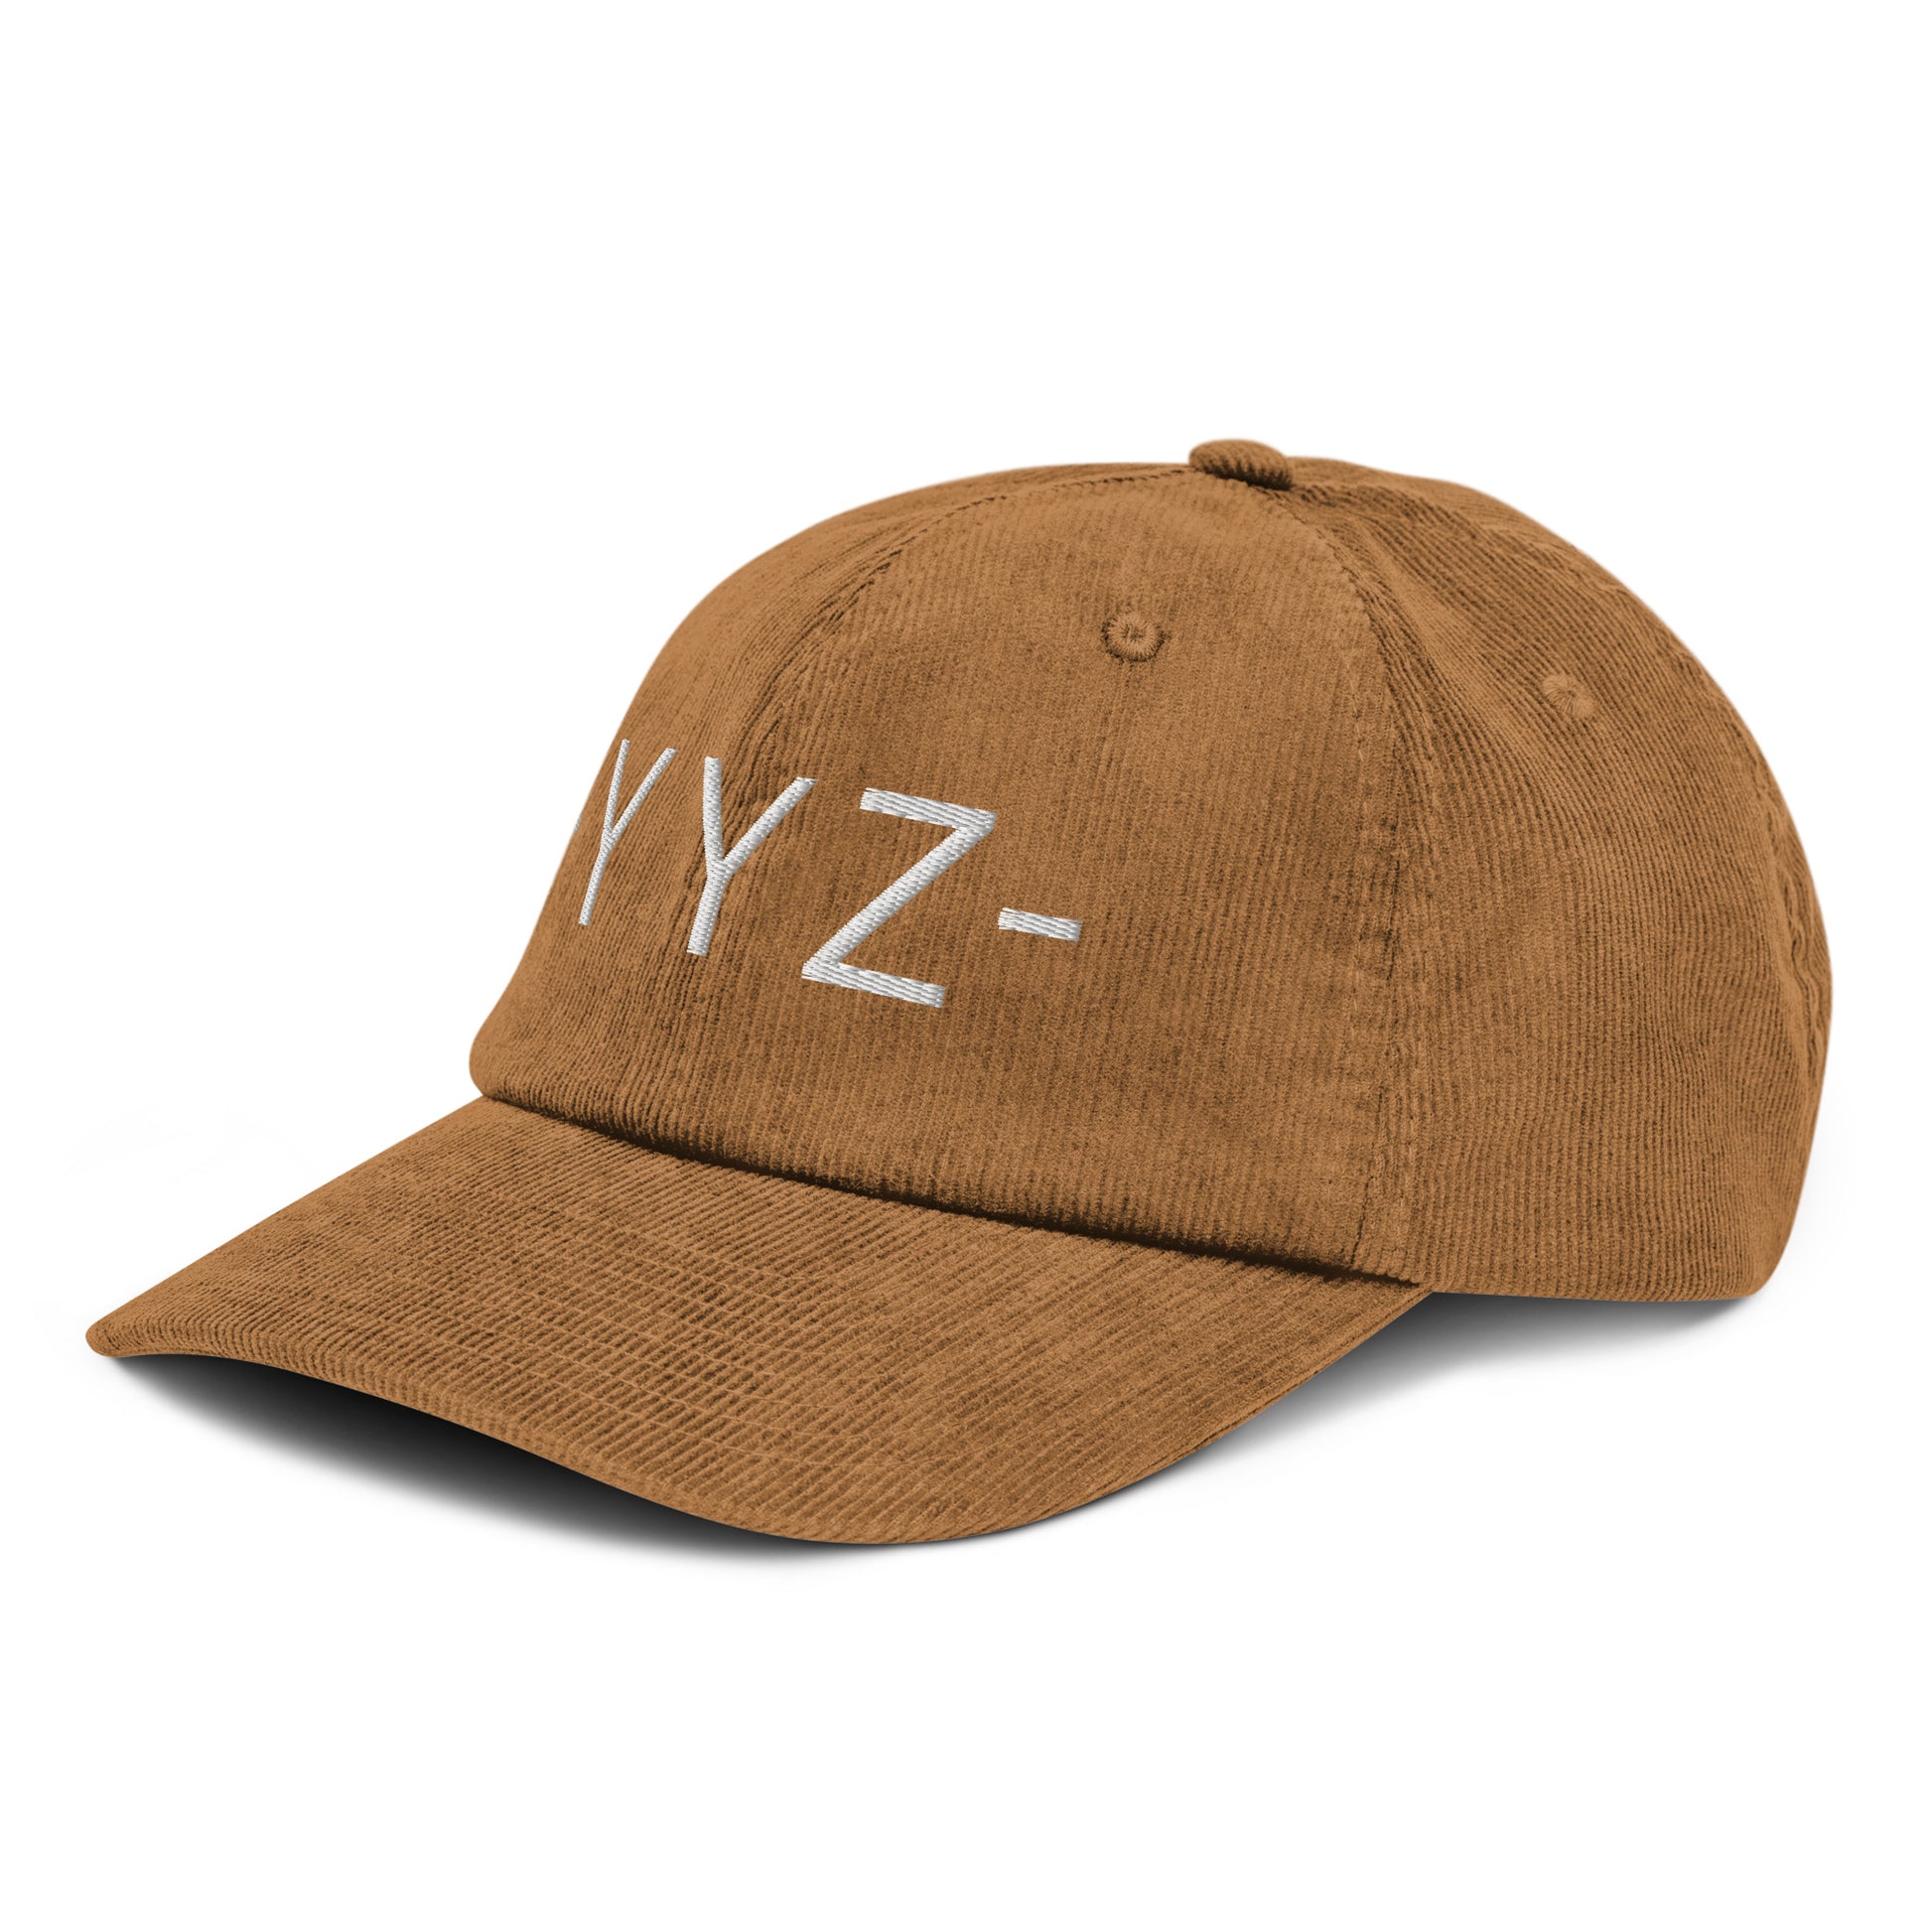 Souvenir Corduroy Hat - White • YYZ Toronto • YHM Designs - Image 19